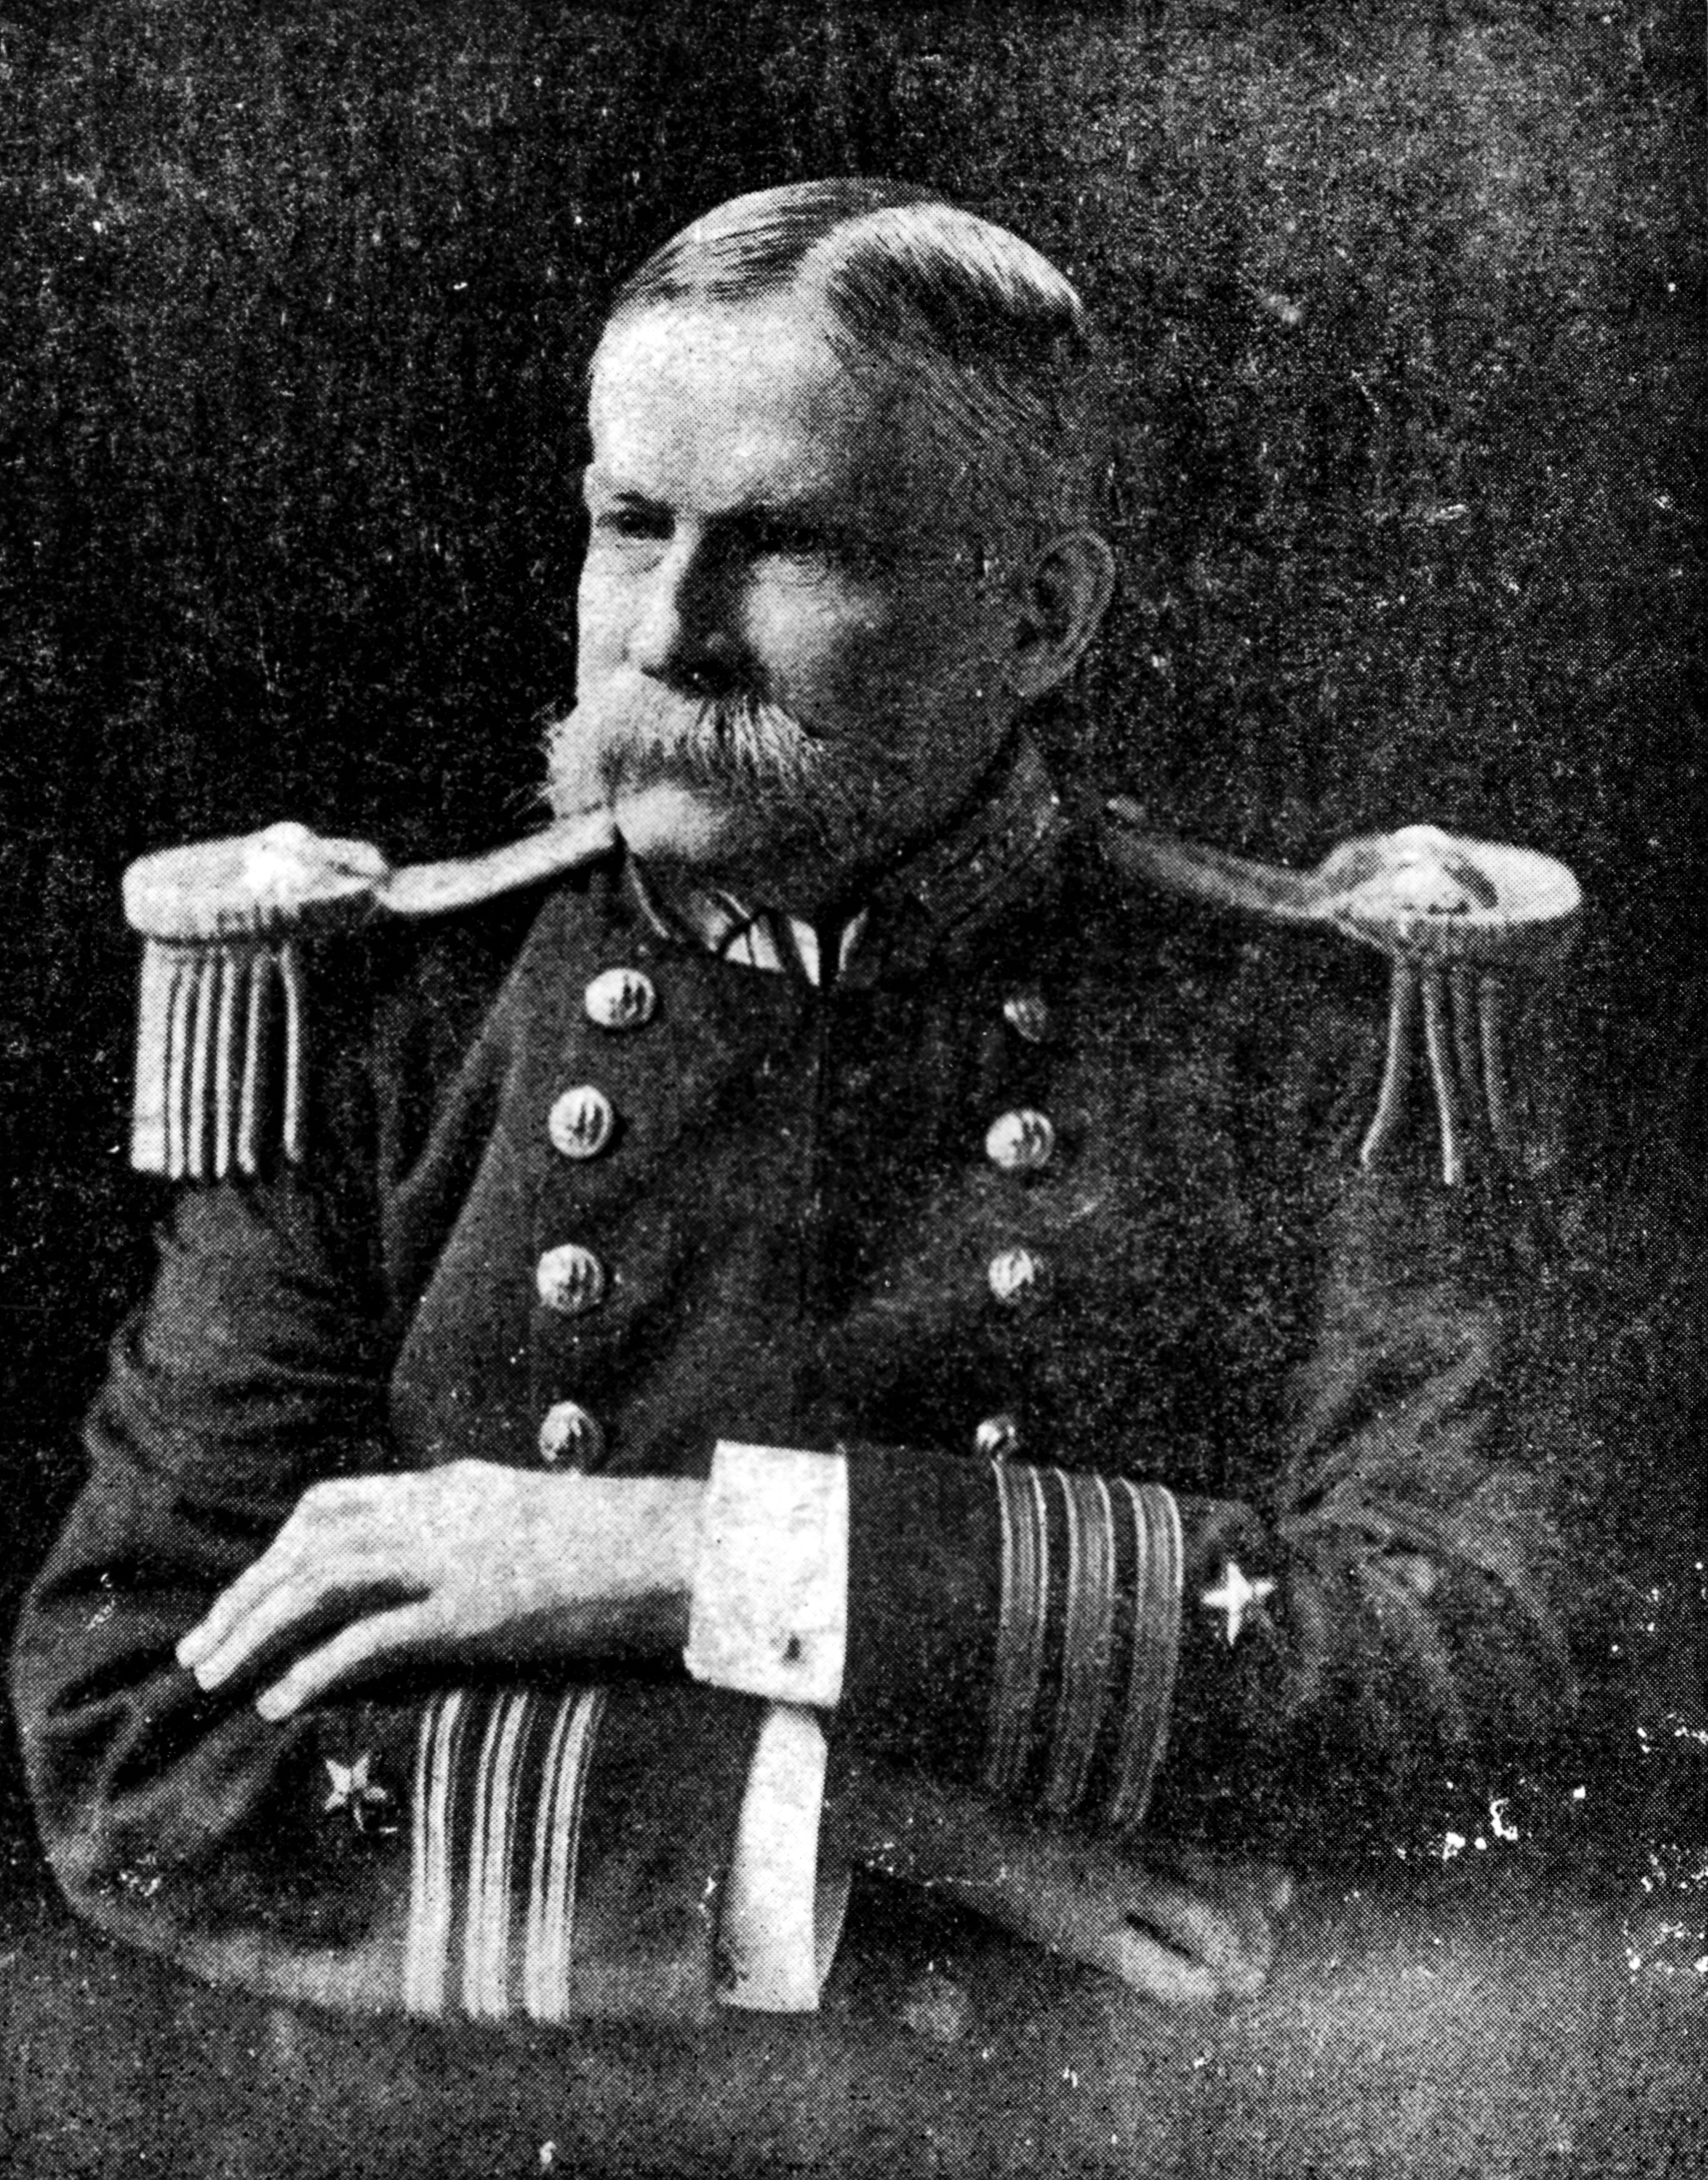 Portrait of Commander Robert M. G. Brown, U.S. Navy